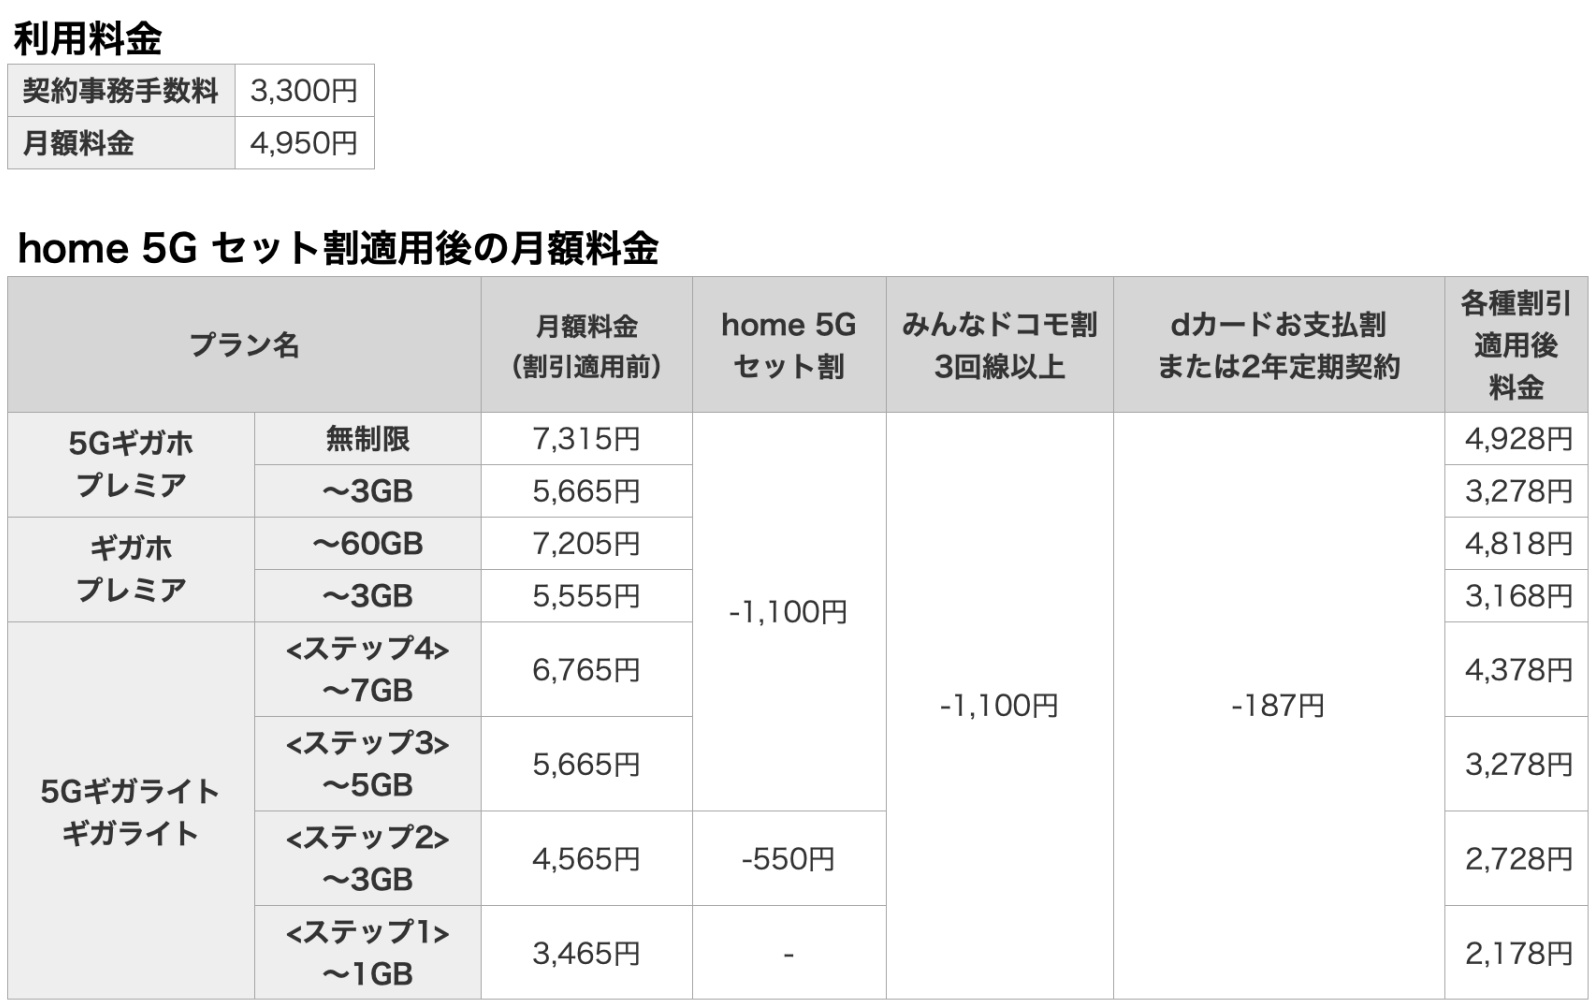 ドコモ版 Softbank Air 発表 5gで固定回線を代替 月額4950円 Engadget 日本版